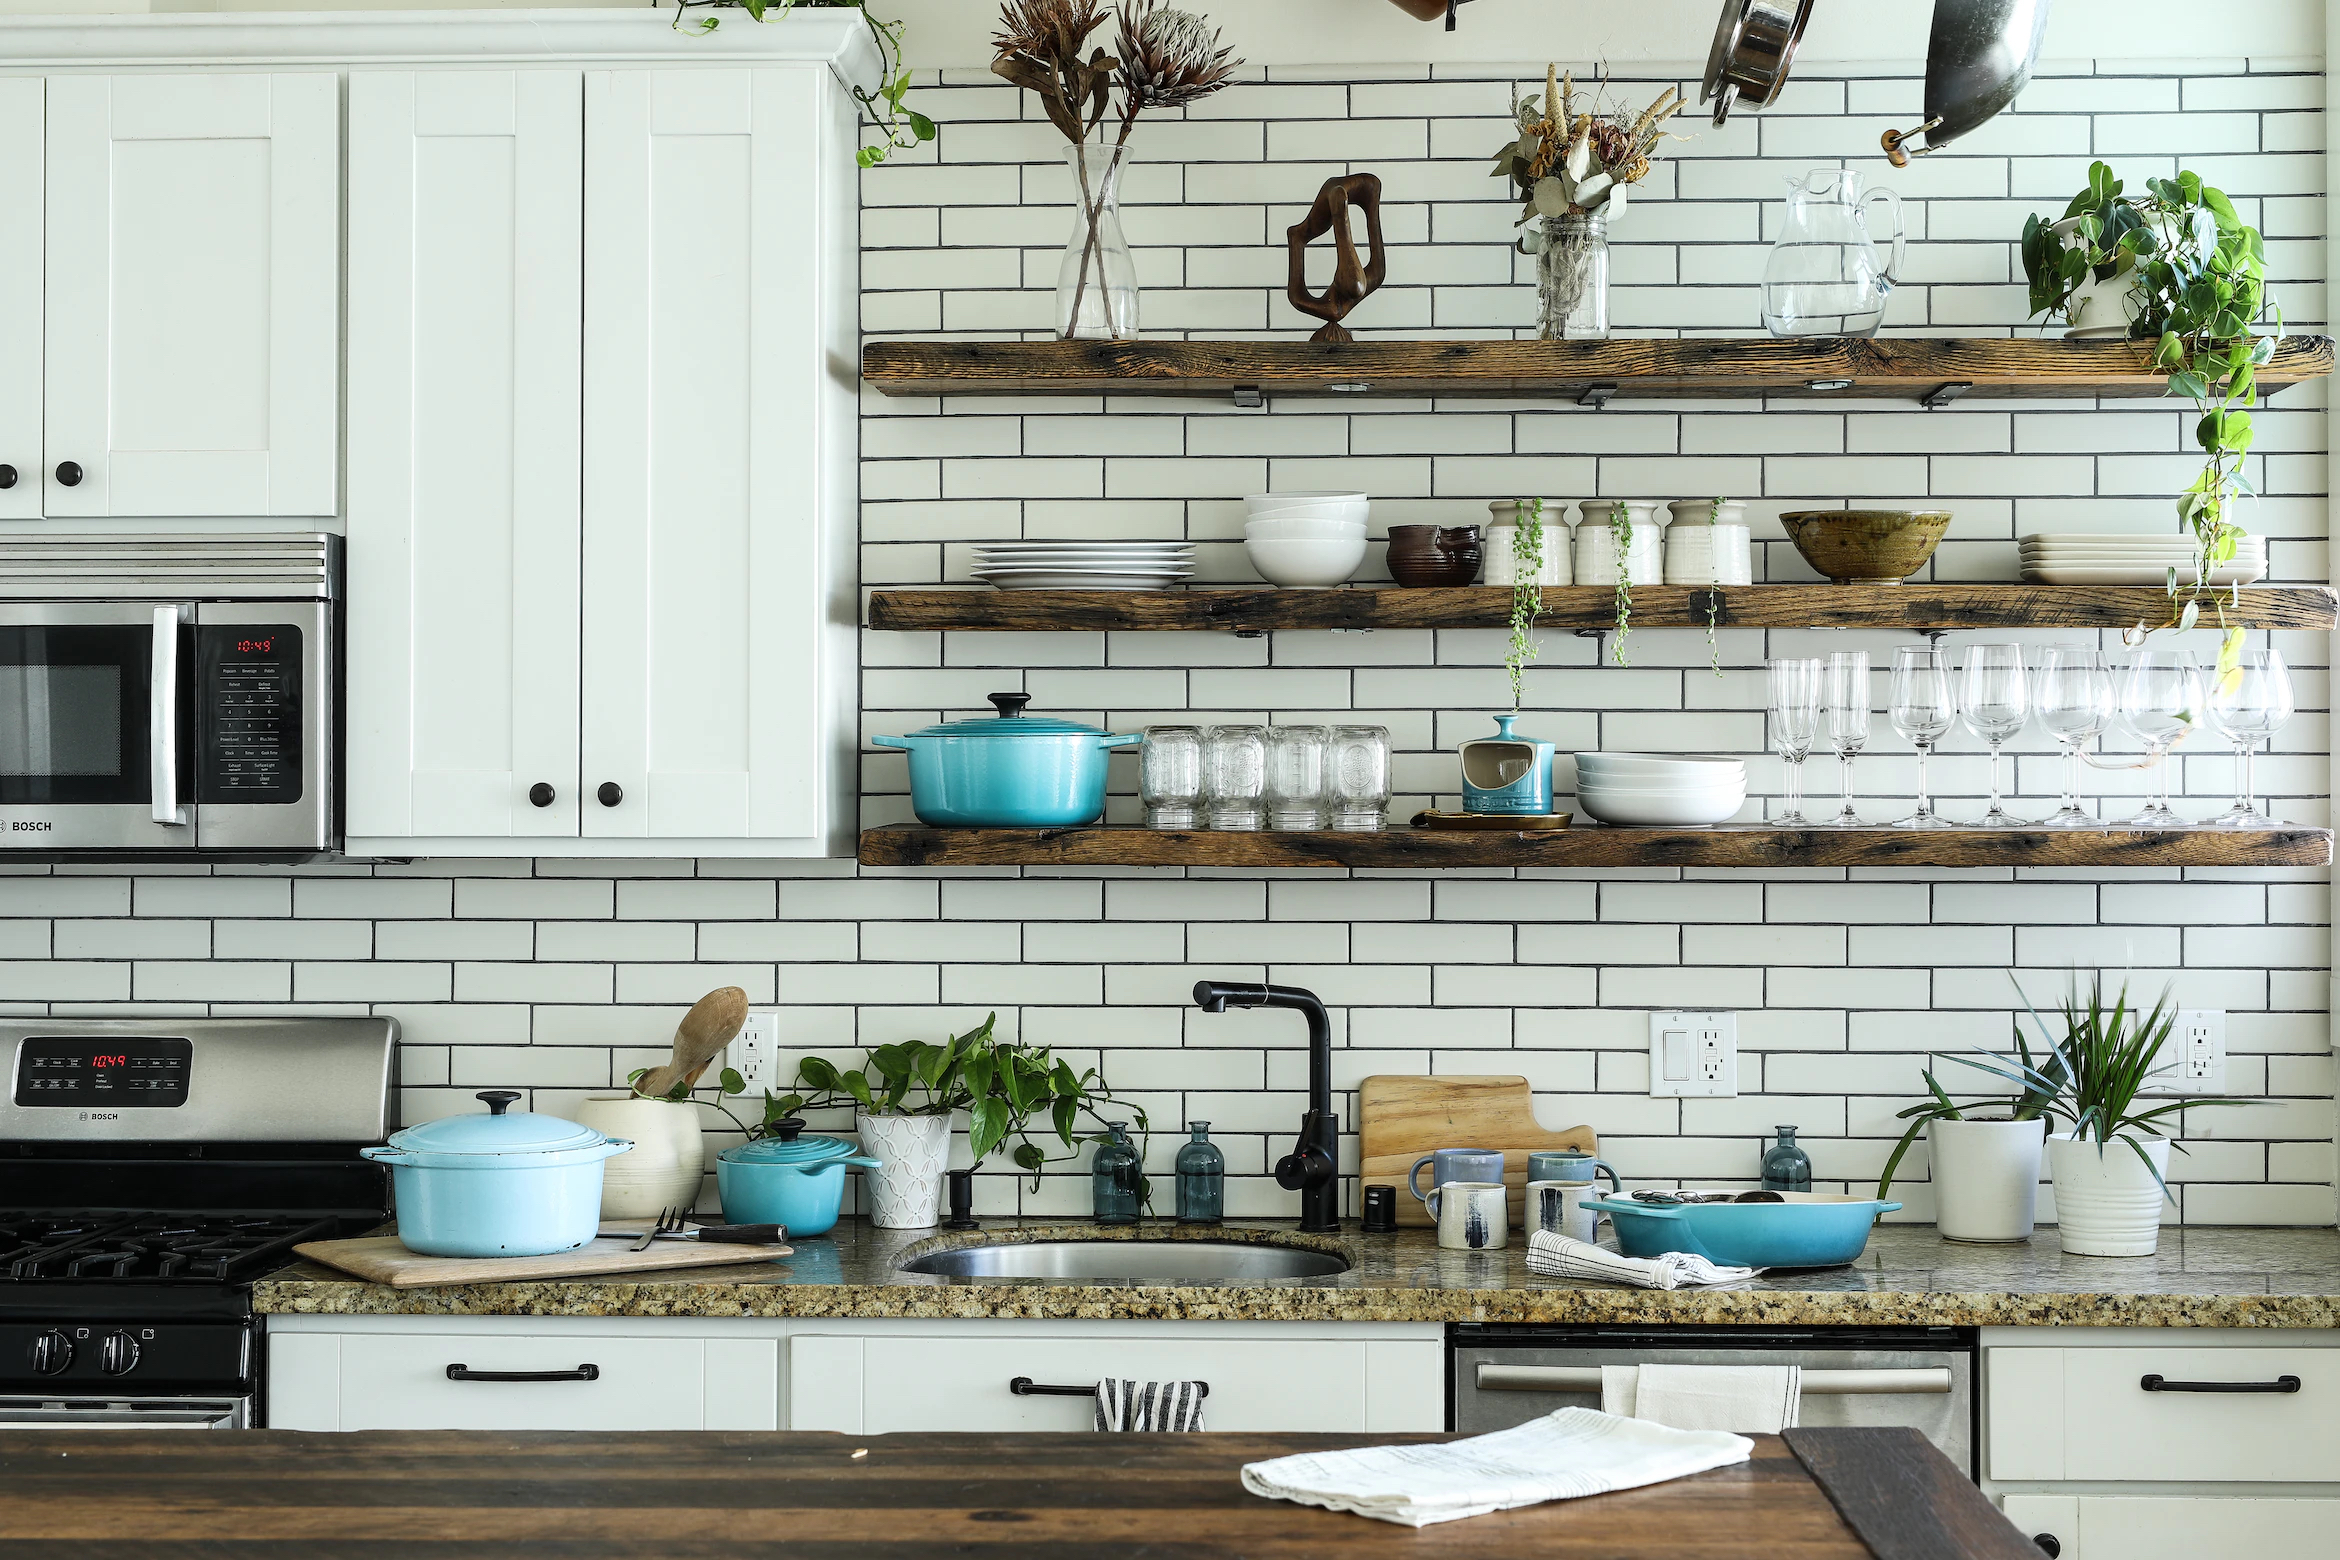 Očista kuchyne - ktoré veci by ste z nej určite mali vyhodiť?